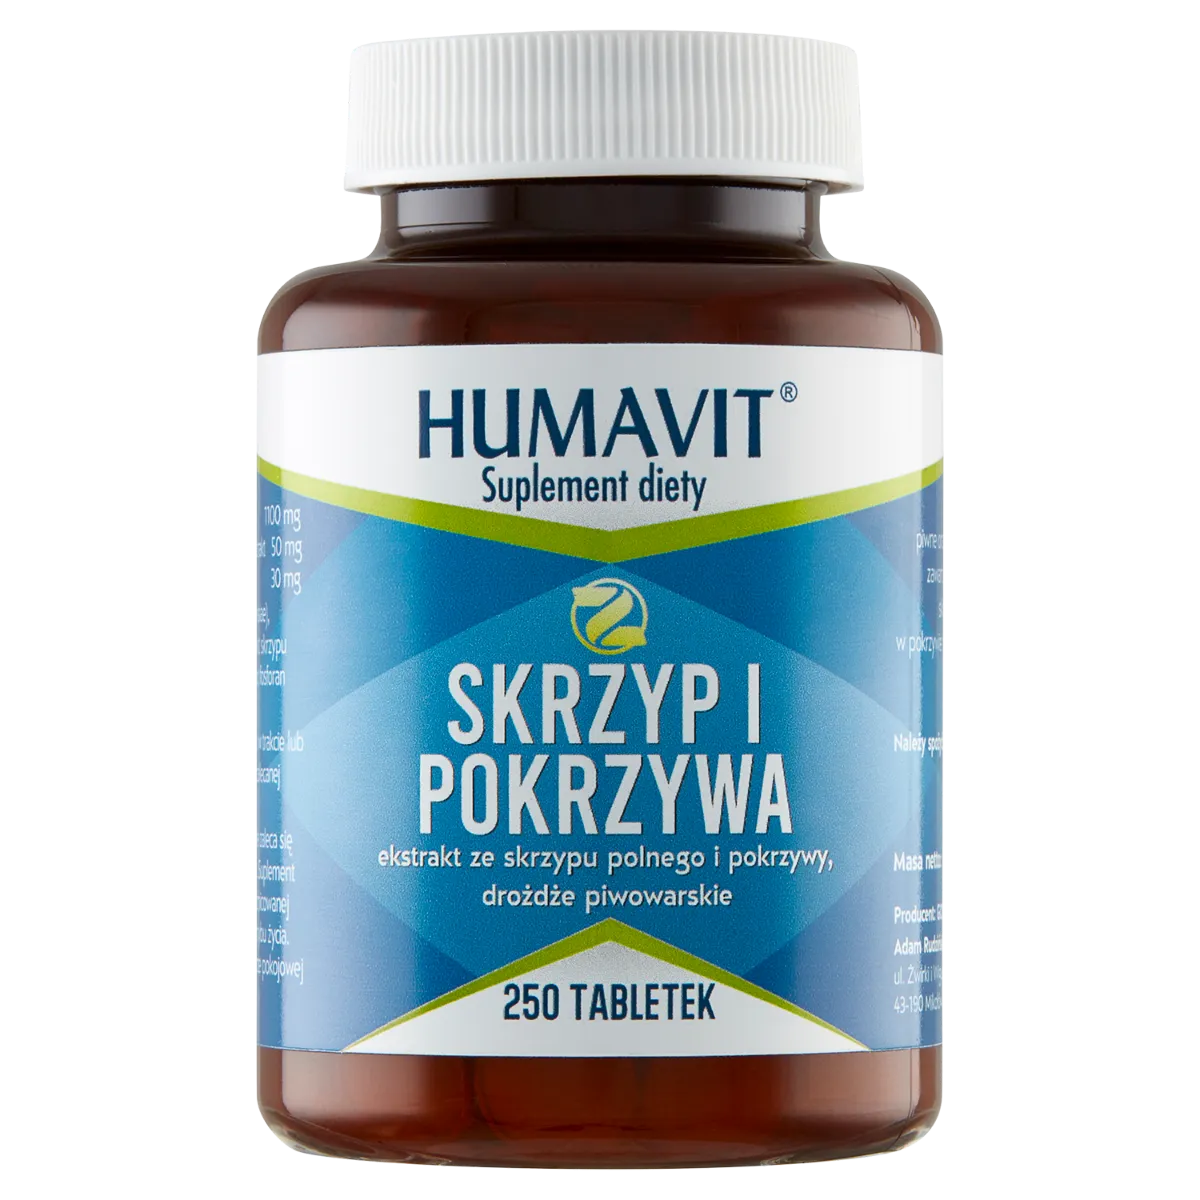 Humavit Z Skrzyp i Pokrzywa, suplement diety, 250 tabletek 